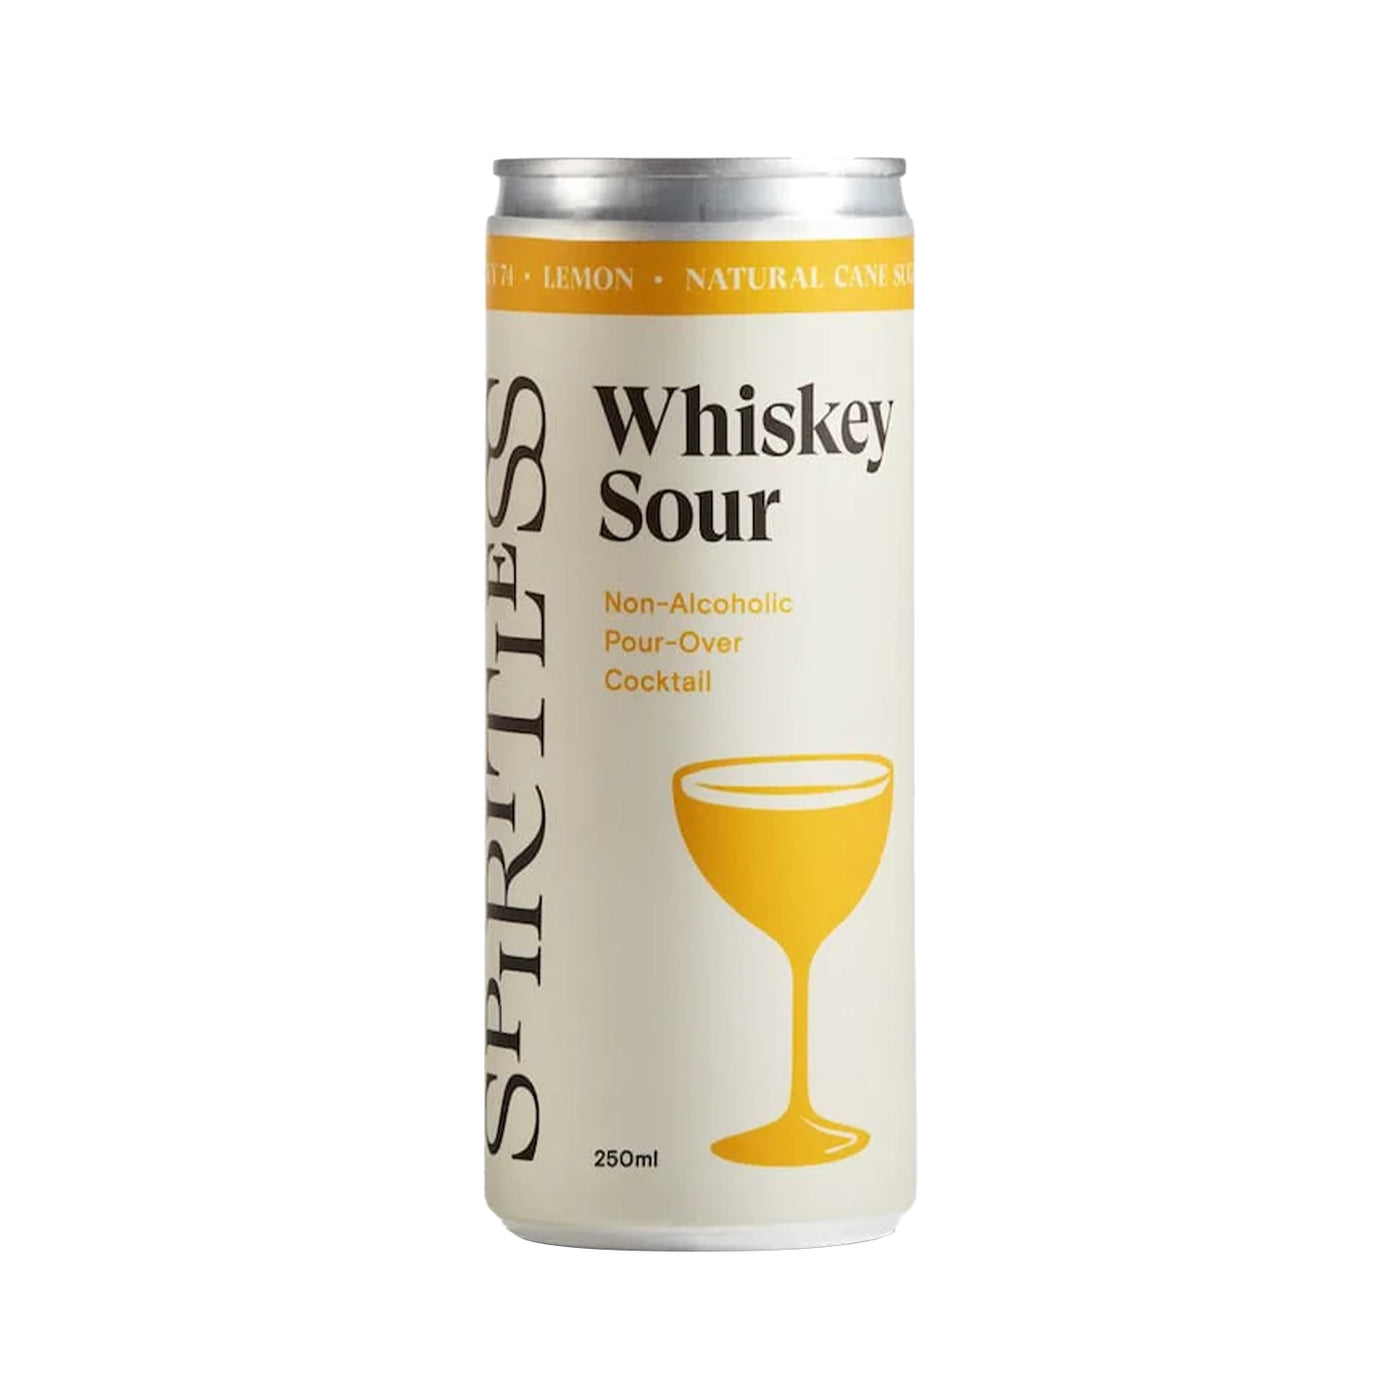 Spiritless non-alcoholic whiskey sour cocktail